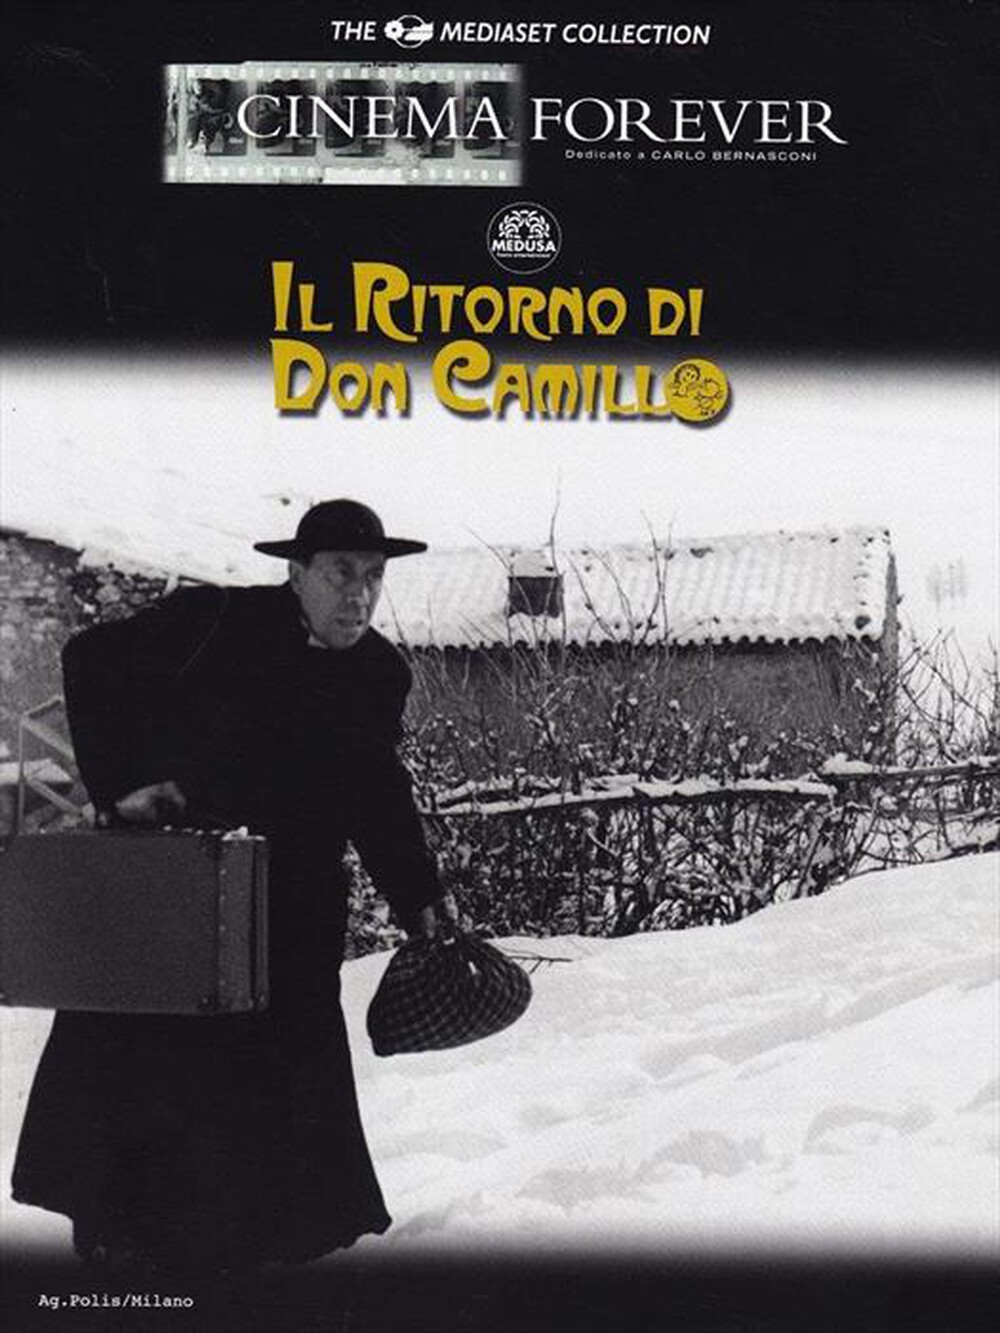 "CECCHI GORI - Don Camillo - Il Ritorno Di Don Camillo - "